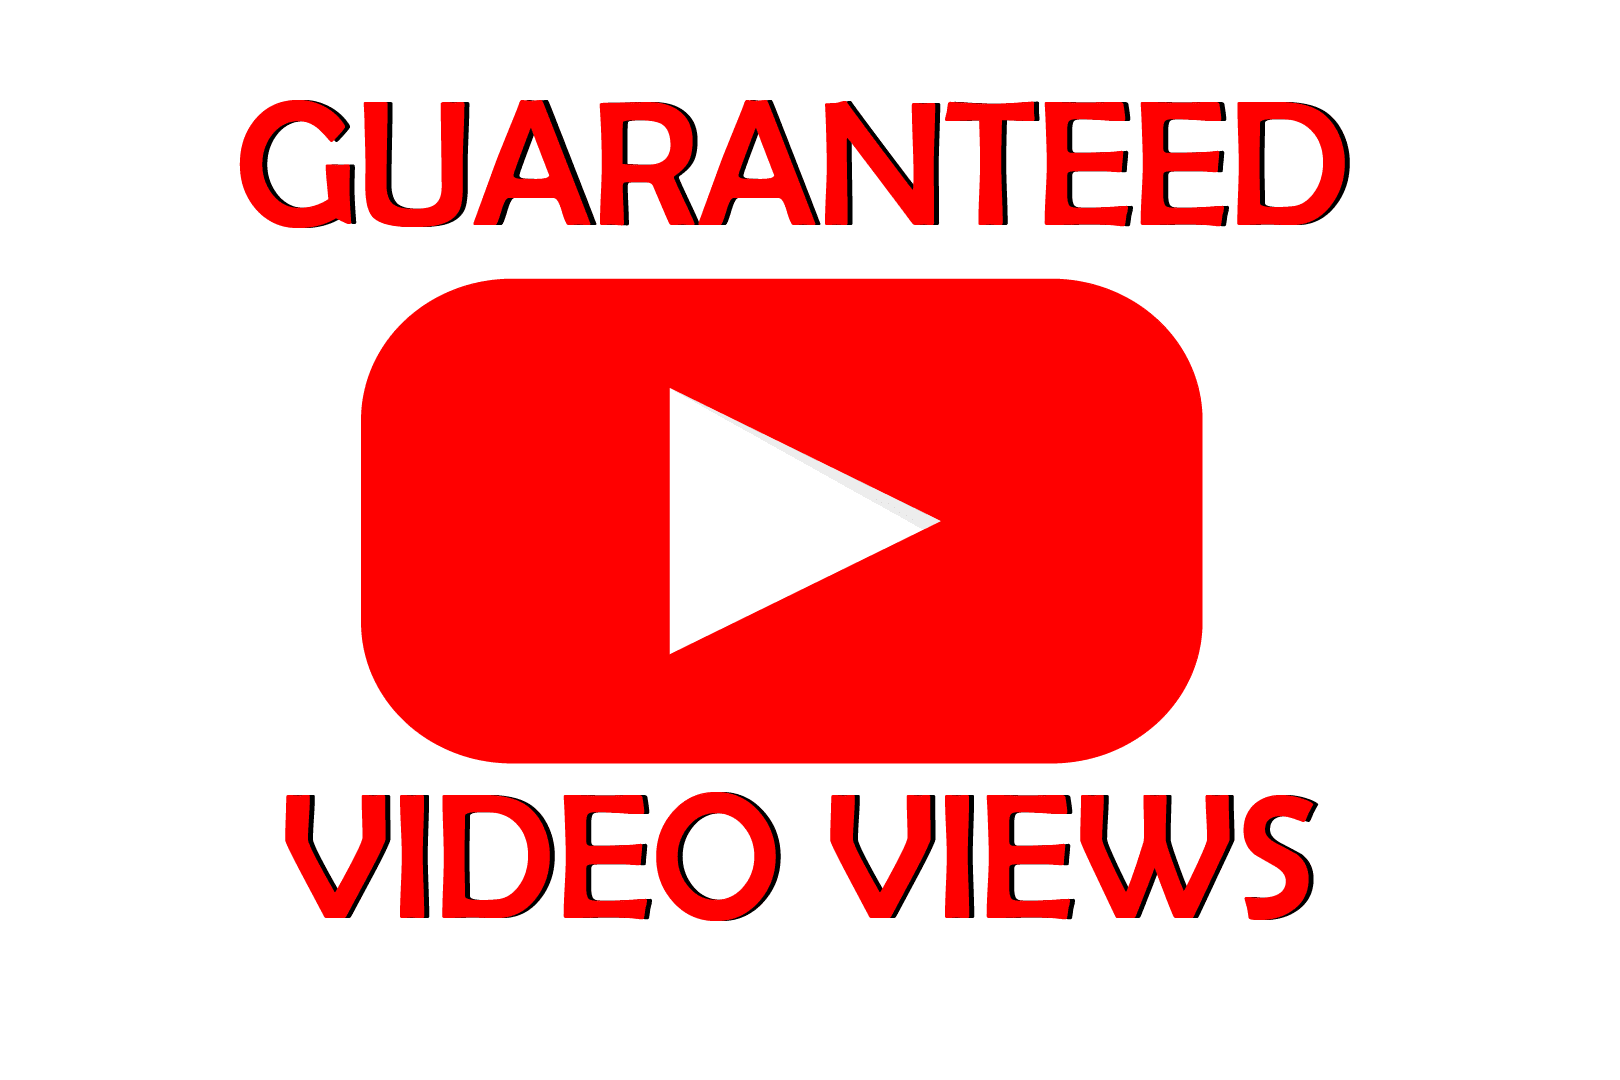 Portfolio for Youtube views